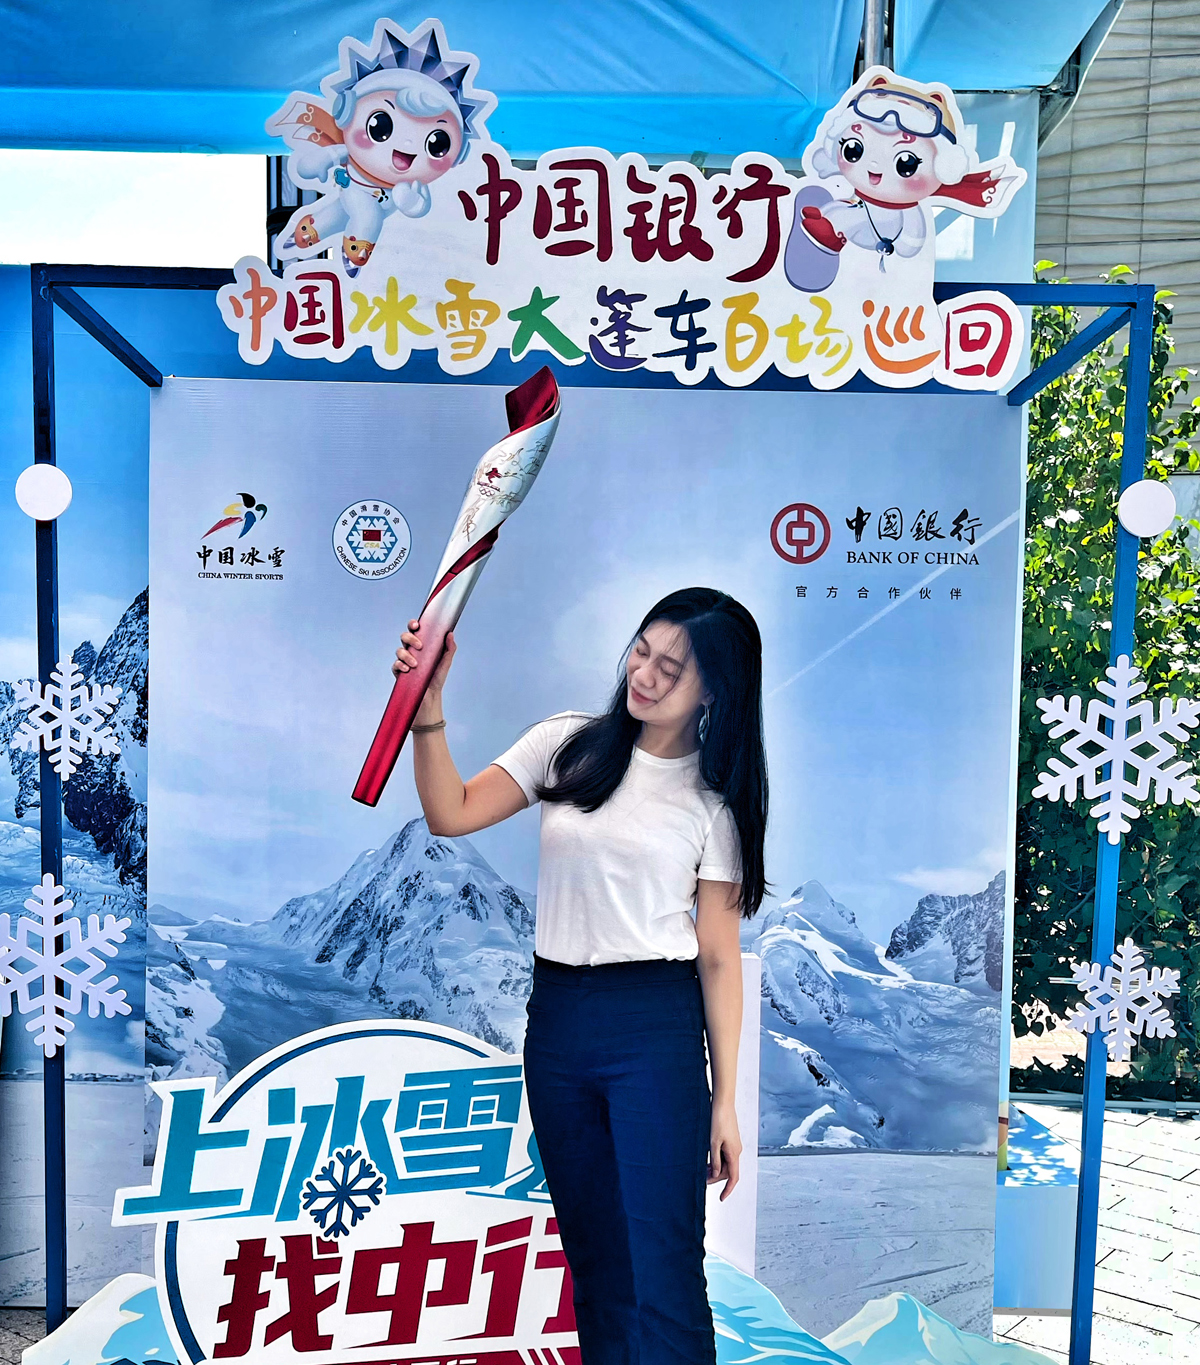 延续冰雪运动热情中国冰雪大篷车哈尔滨卓展购物中心